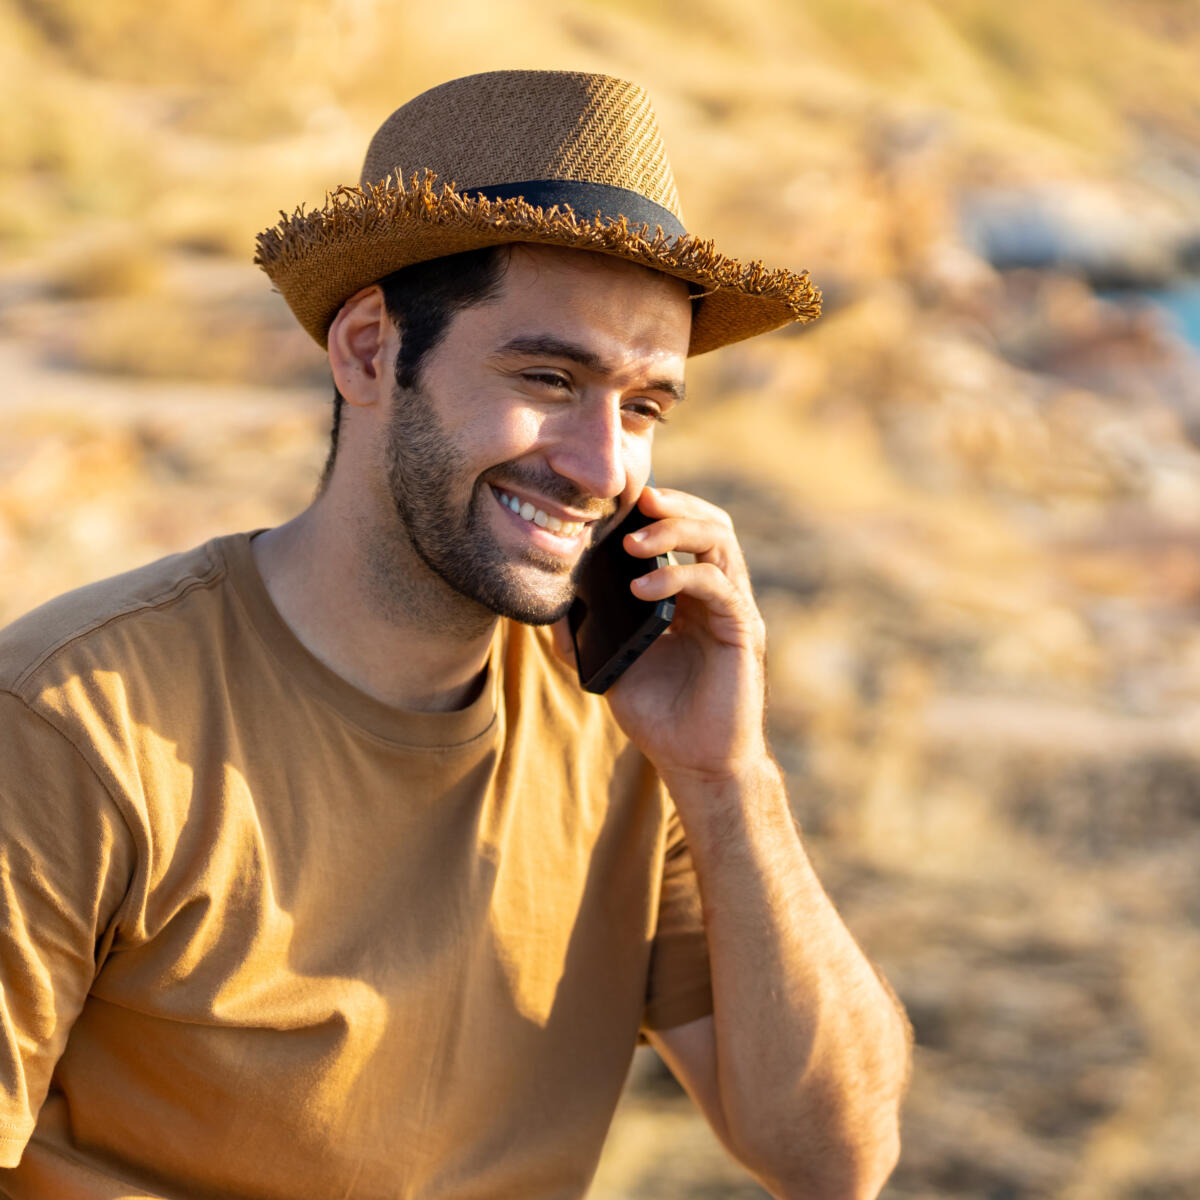 Man smiling using phone